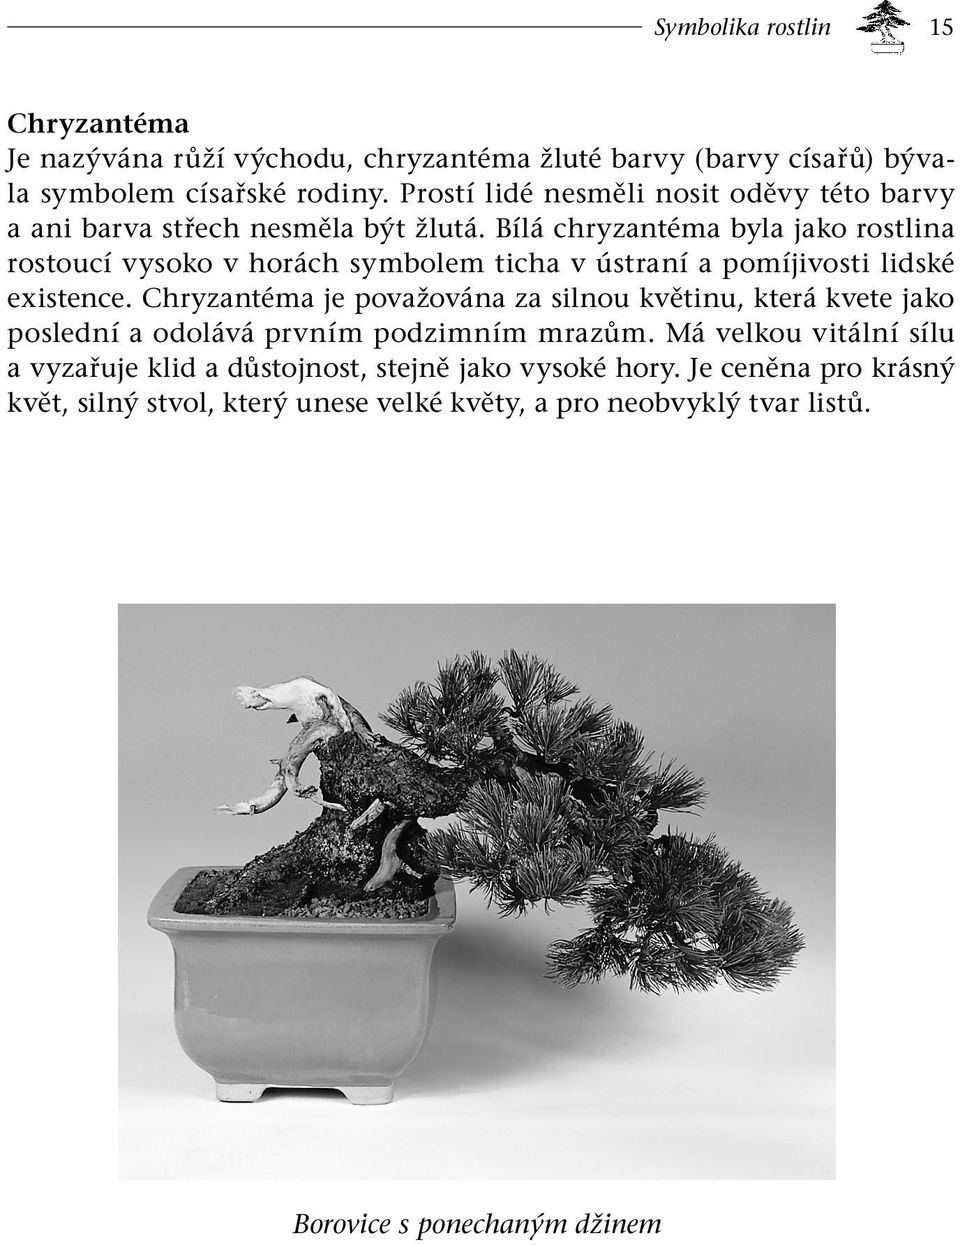 Bílá chryzantéma byla jako rostlina rostoucí vysoko v horách symbolem ticha v ústraní a pomíjivosti lidské existence.